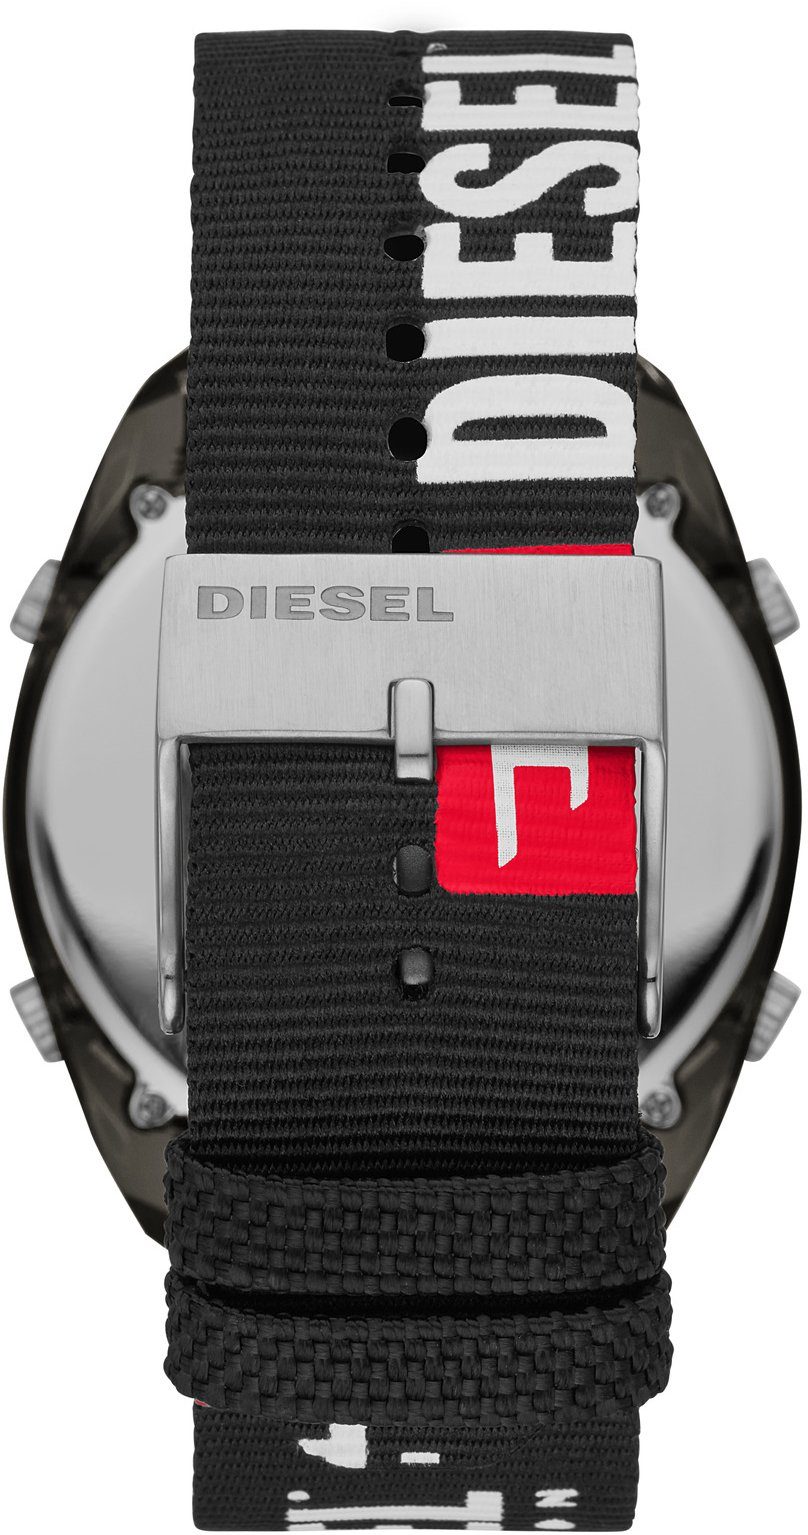 CRUSHER, Digitaluhr DZ1914 Diesel